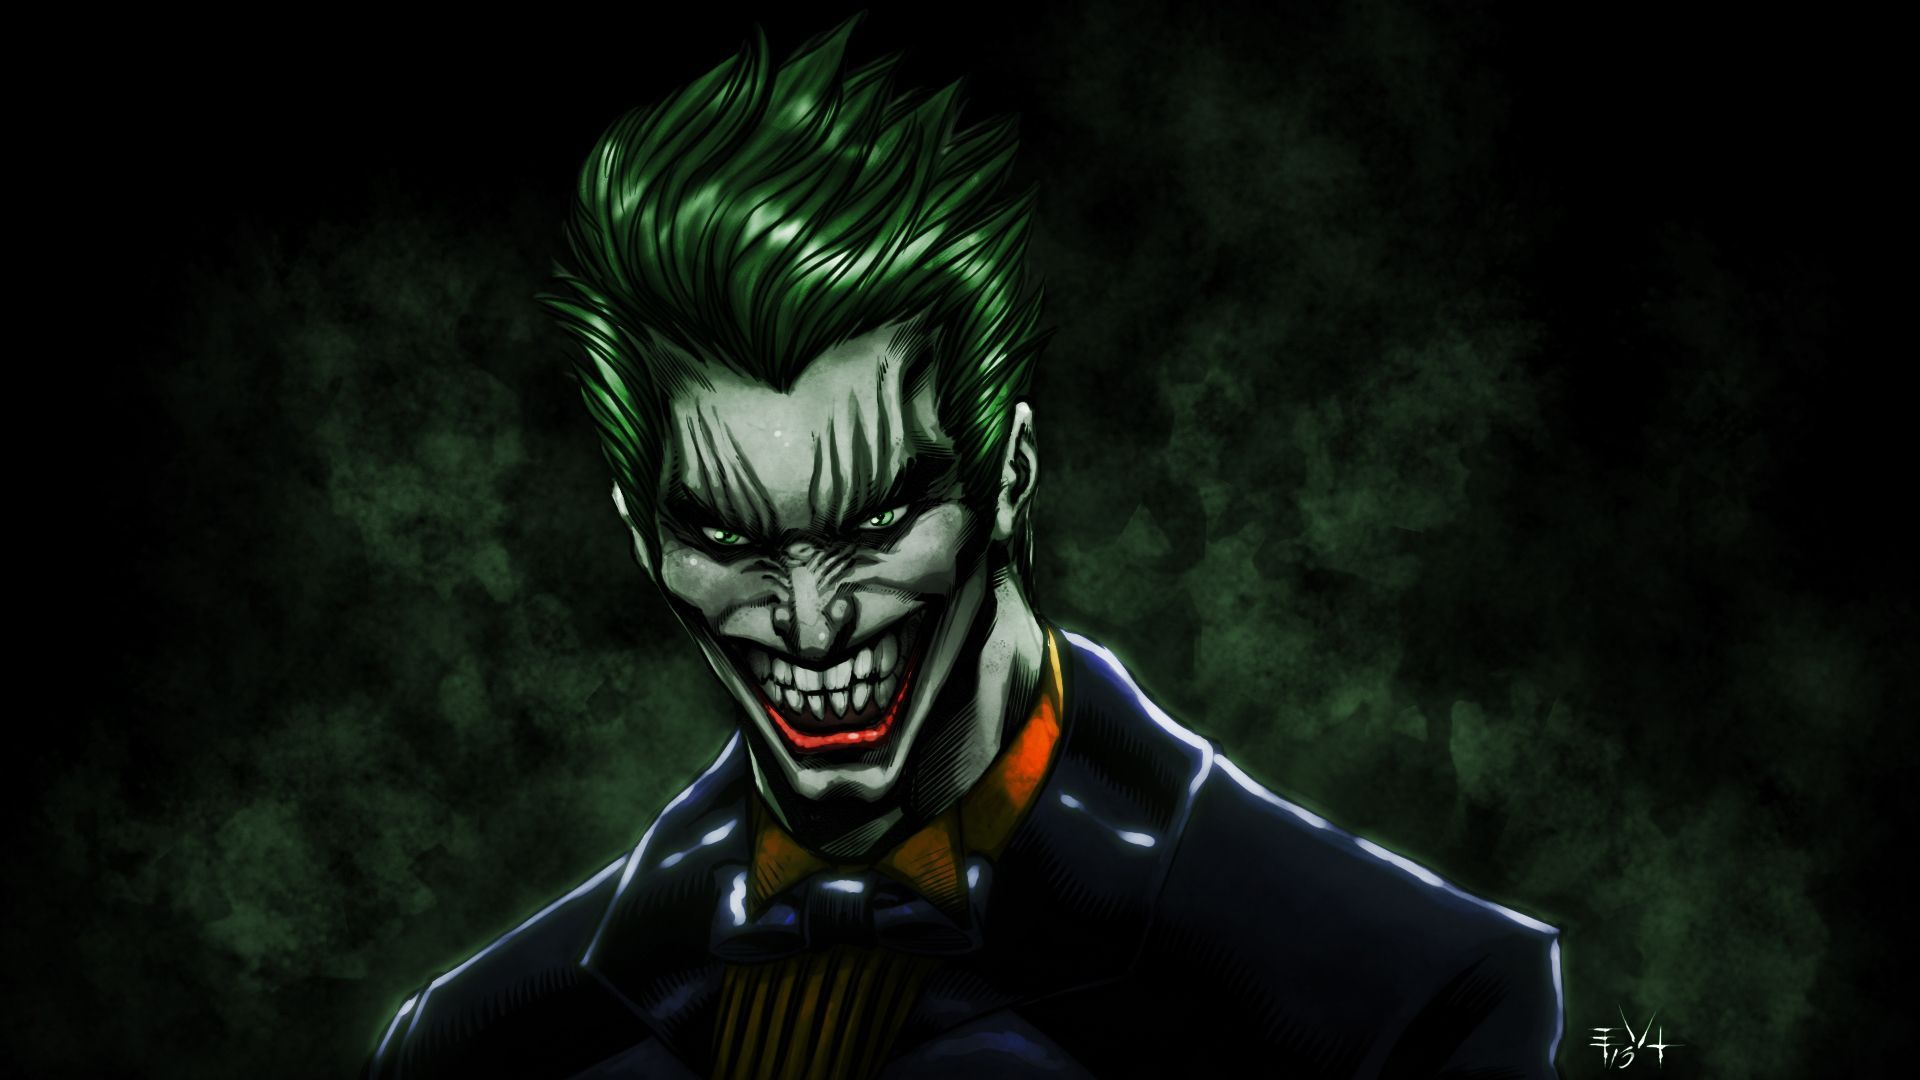 The Joker wallpaper and video. Joker wallpaper, Joker image, Joker comic